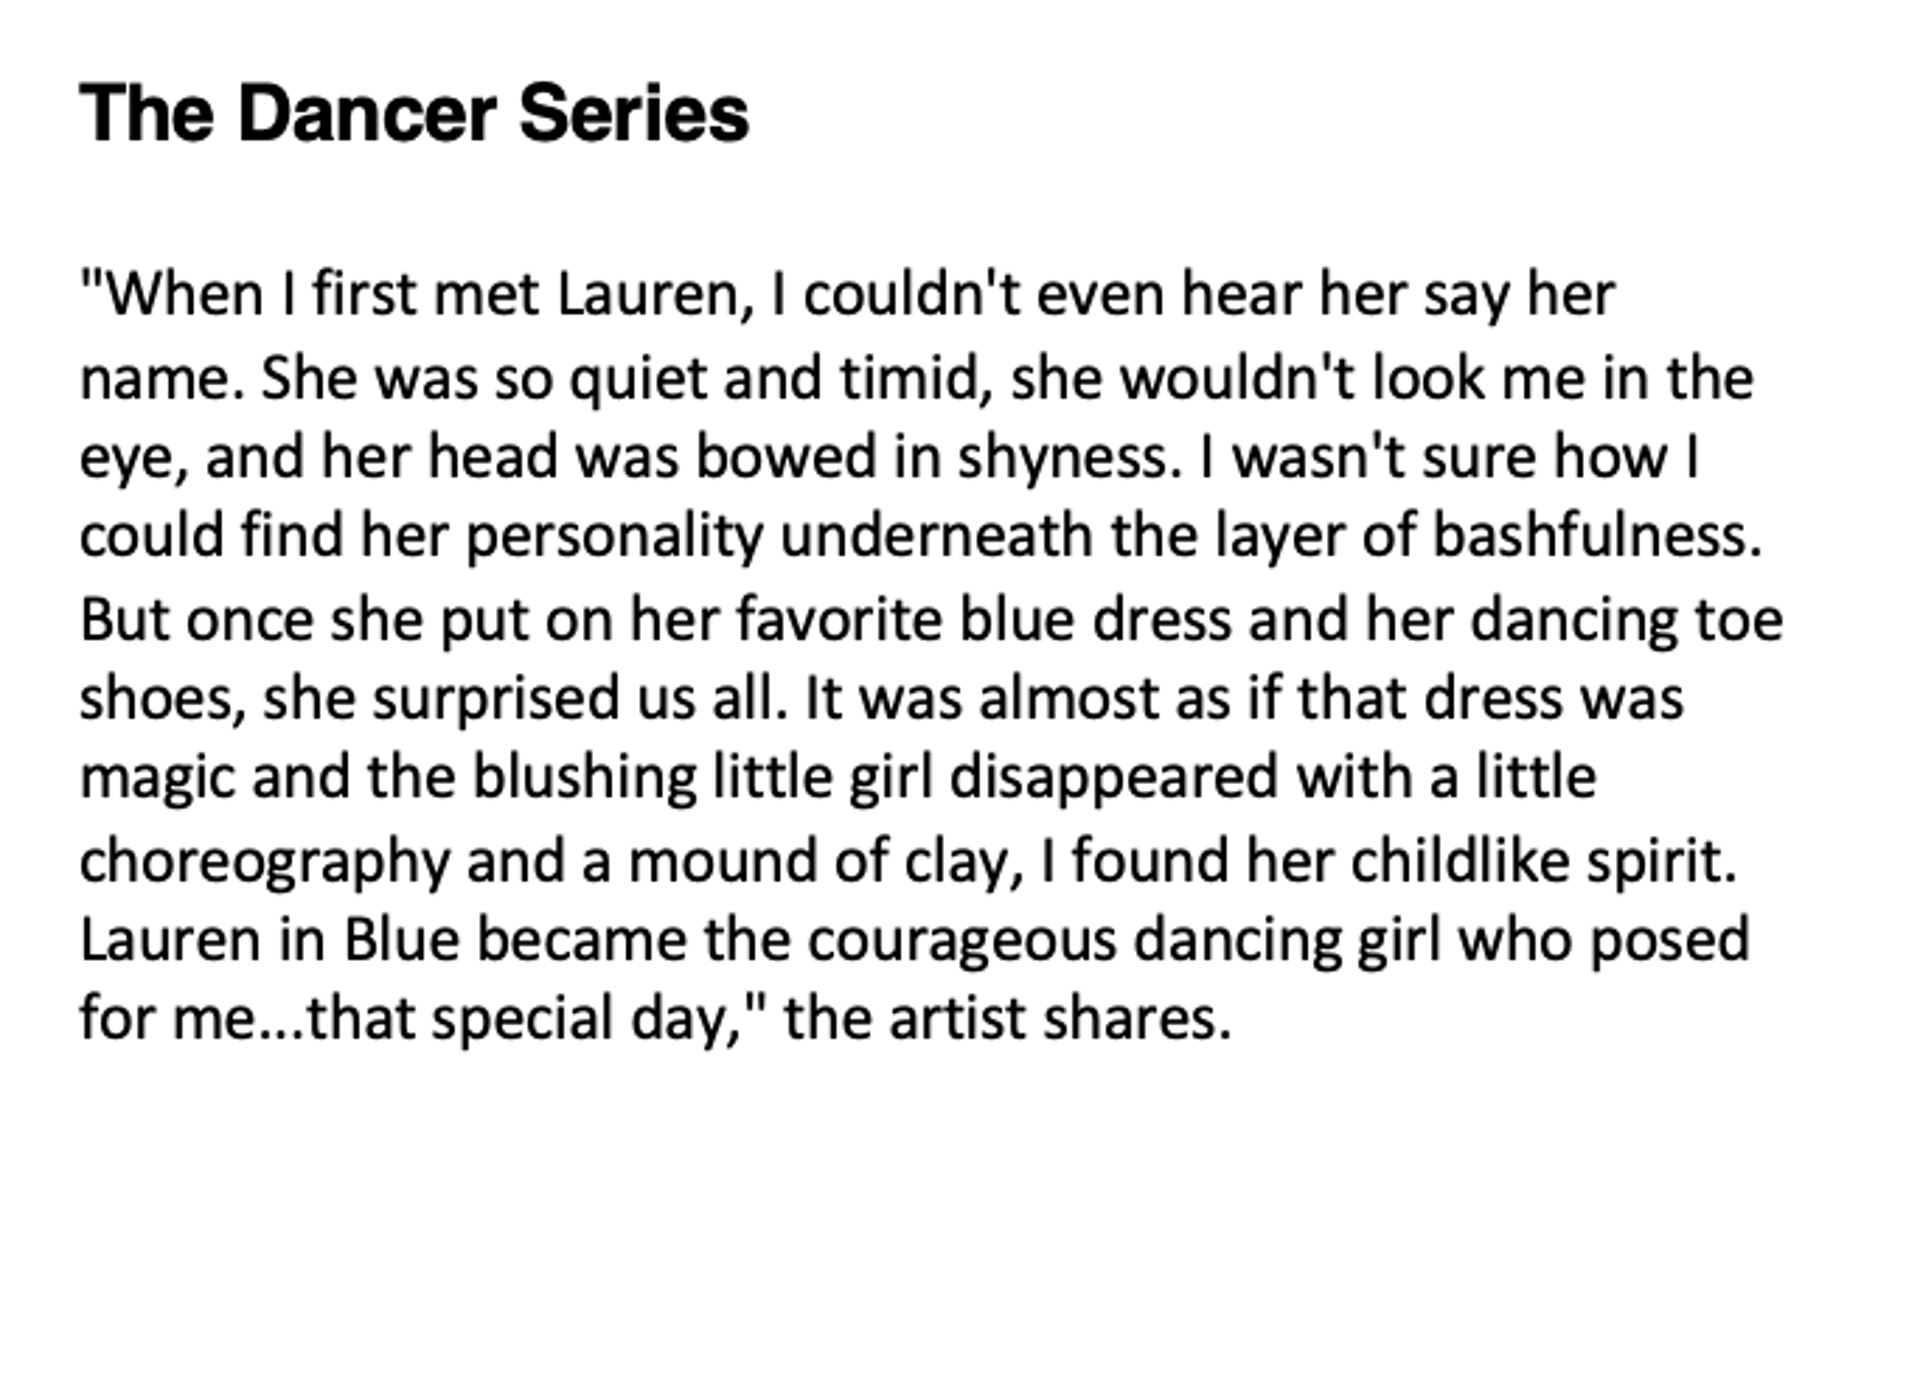 The Dancer Series, "Lauren in Blue"